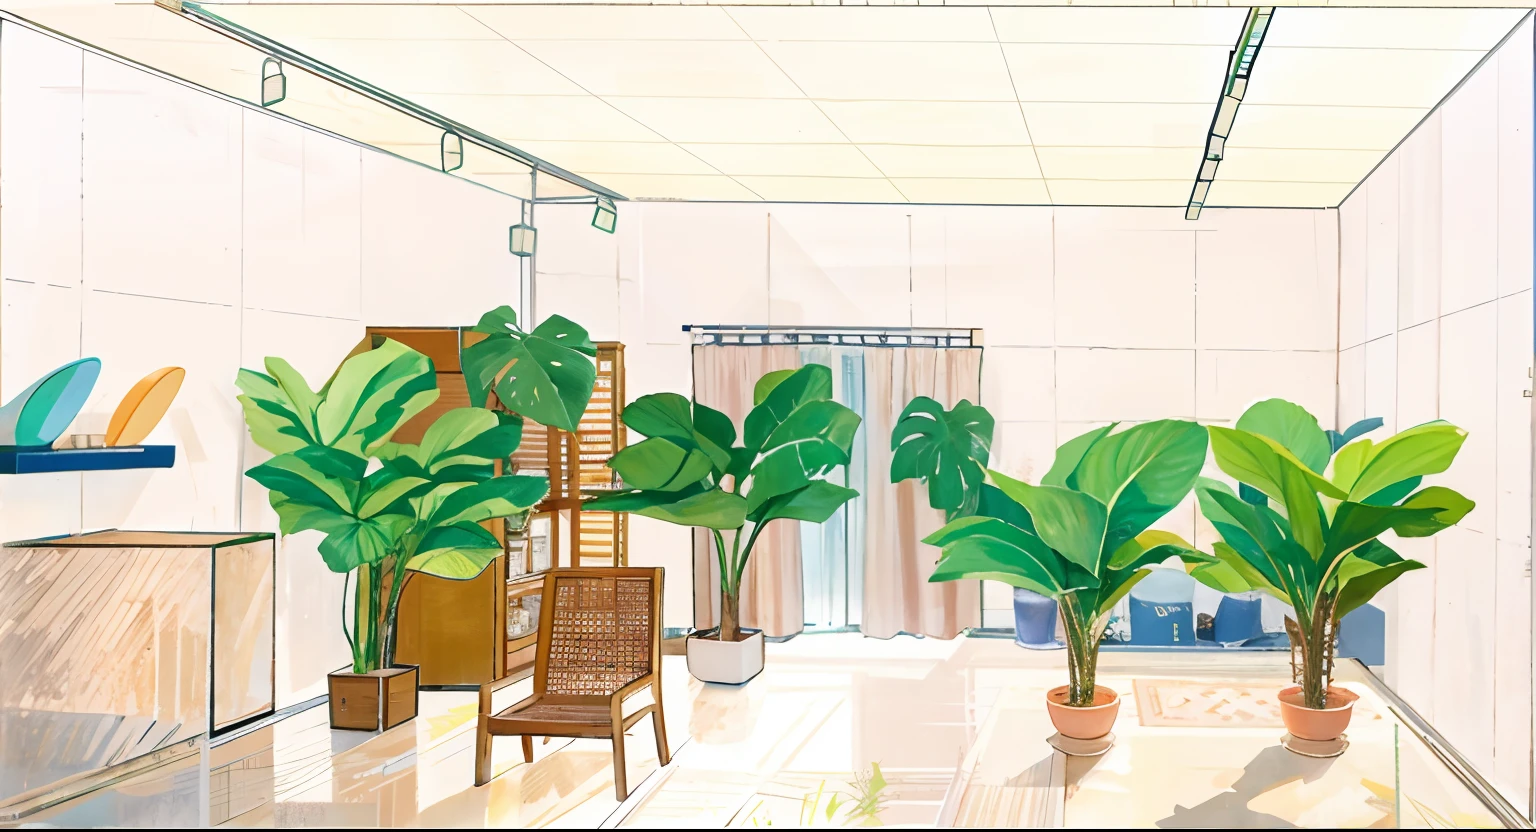 傑作、最高品質、無錫1GIR、 啓発する, 椅子, とテーブル, セットデザイン, by Ayako Rokkaku, ショールーム, コンセプト画, エスタブリッシングショット, 鉢植えのヤシの木と, 舞台美術要素の裏側, 屋内シーン, 背景の大きな植物, 室内背景アート, 内部背景, 概念的なレンダリング, 詳細なセットデザイン, ジャングルの設定, より高い実数